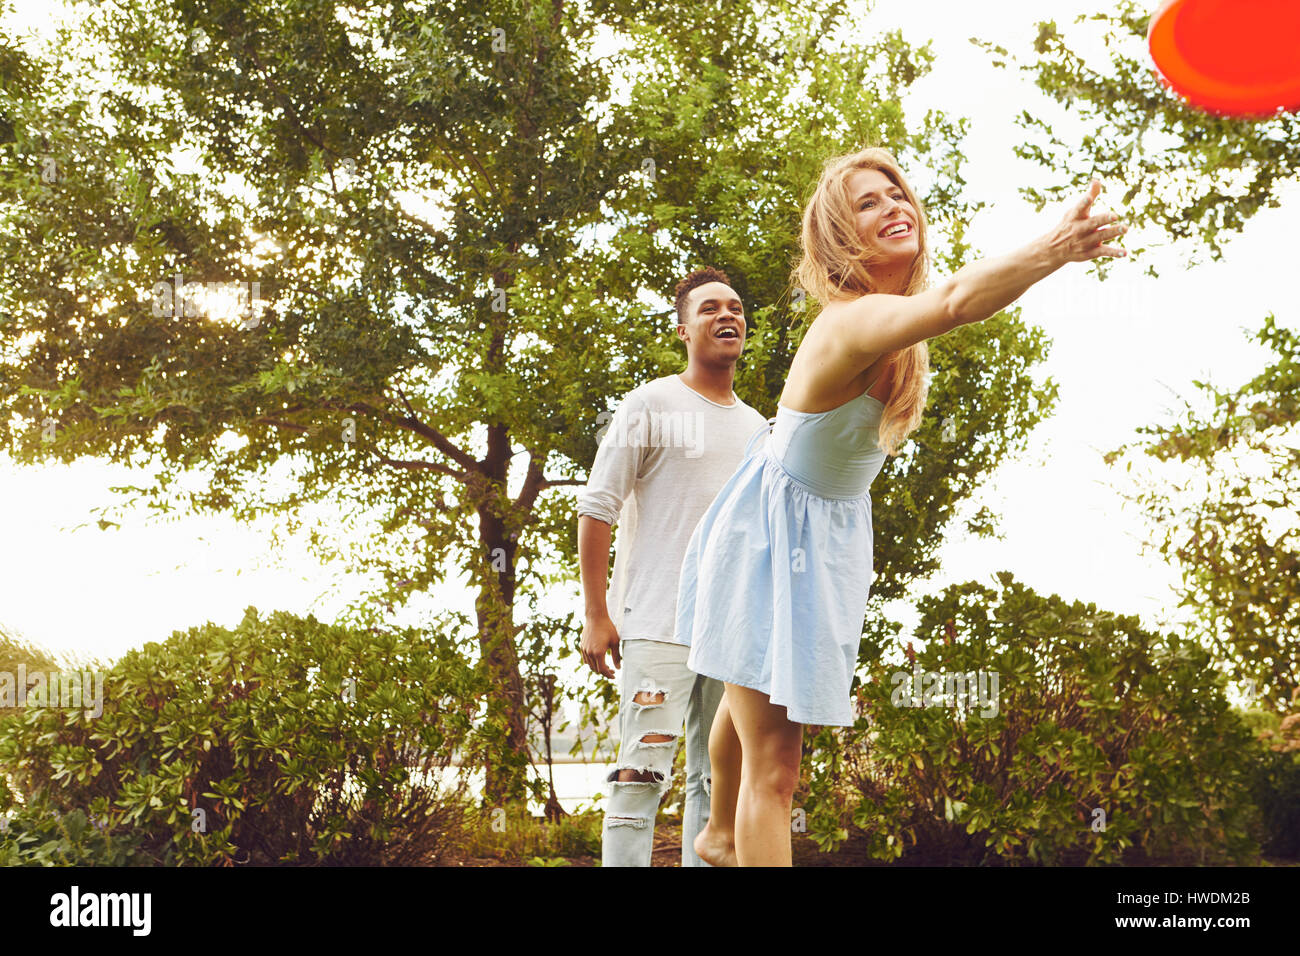 Junge Frau und Mann werfen fliegende Scheibe im park Stockfoto